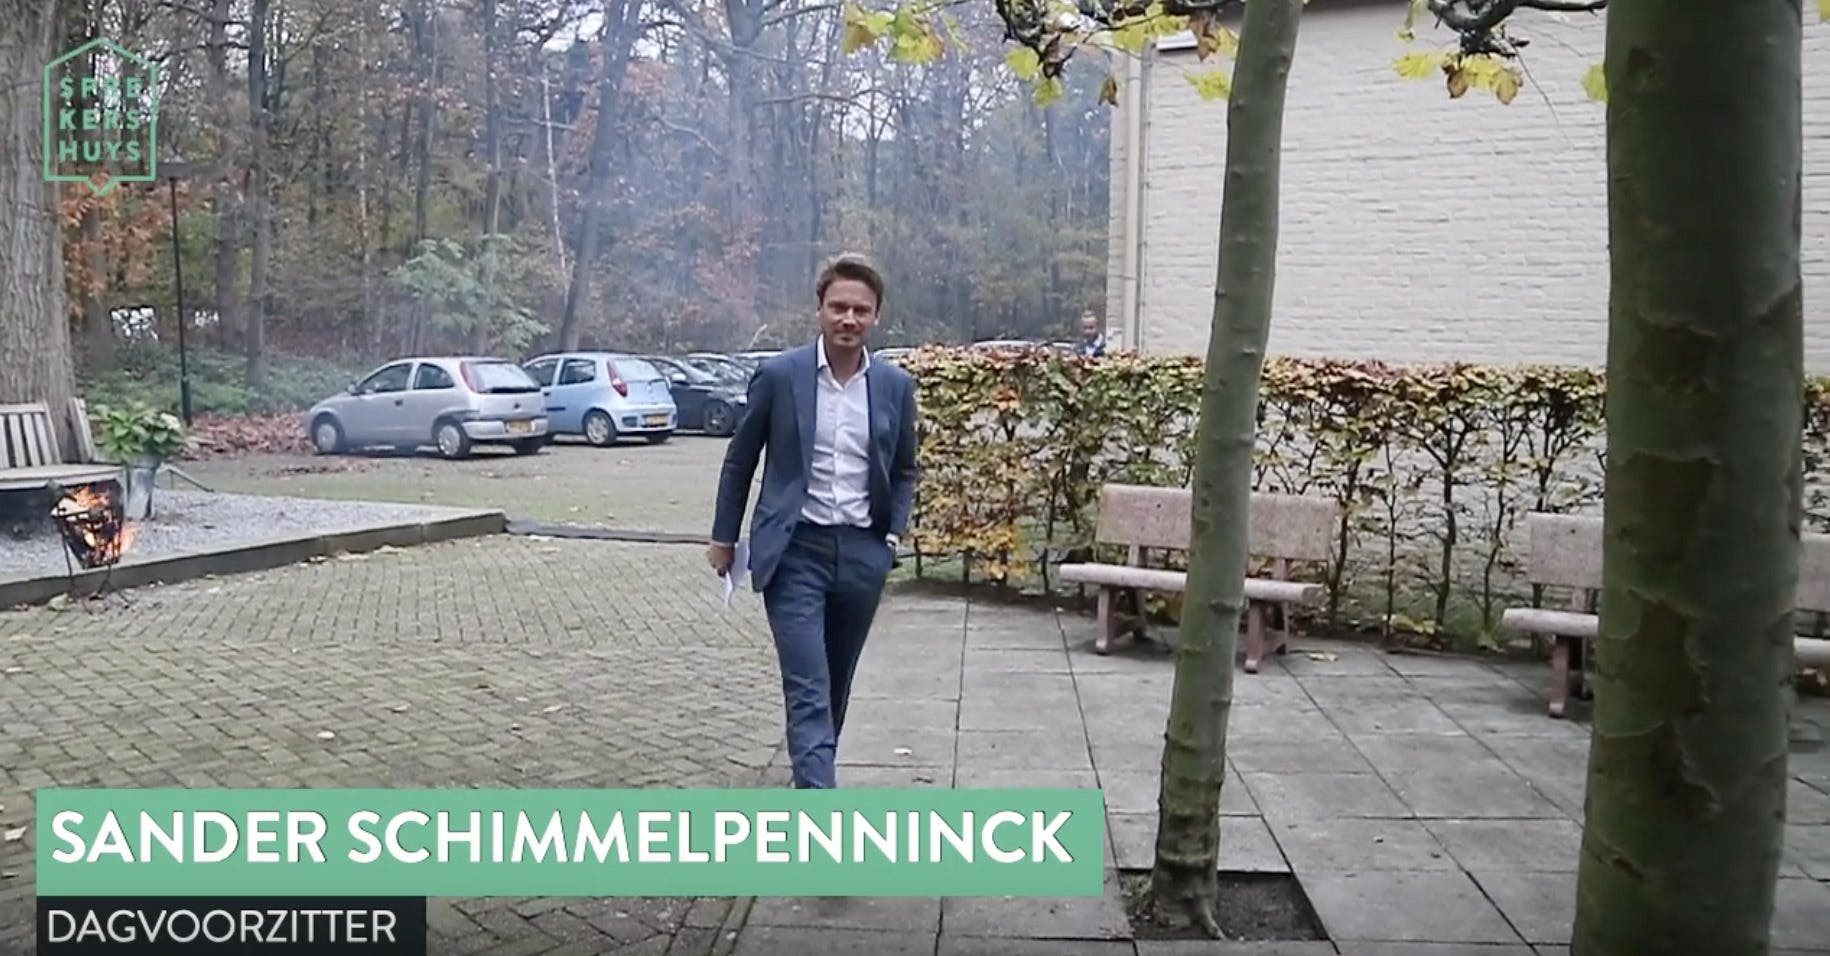 Sander Schimmelpenninck lopend buiten in blauw pak met tekst 'Sander Schimmelpenninck dagvoorzitter'